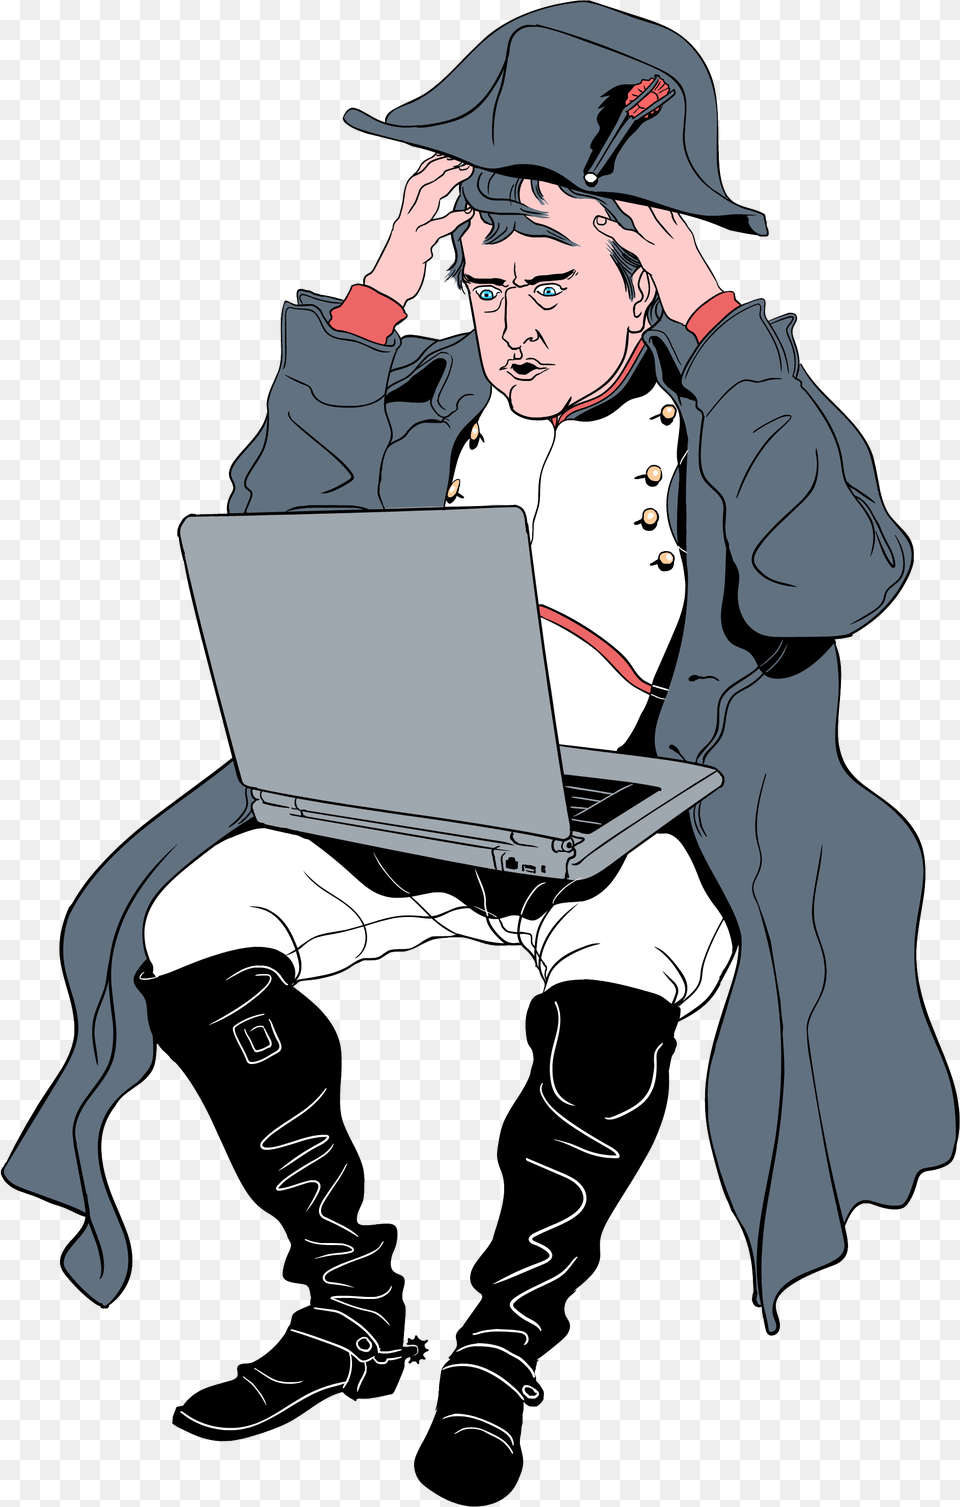 Napoleon, Publication, Pc, Electronics, Computer Png Image